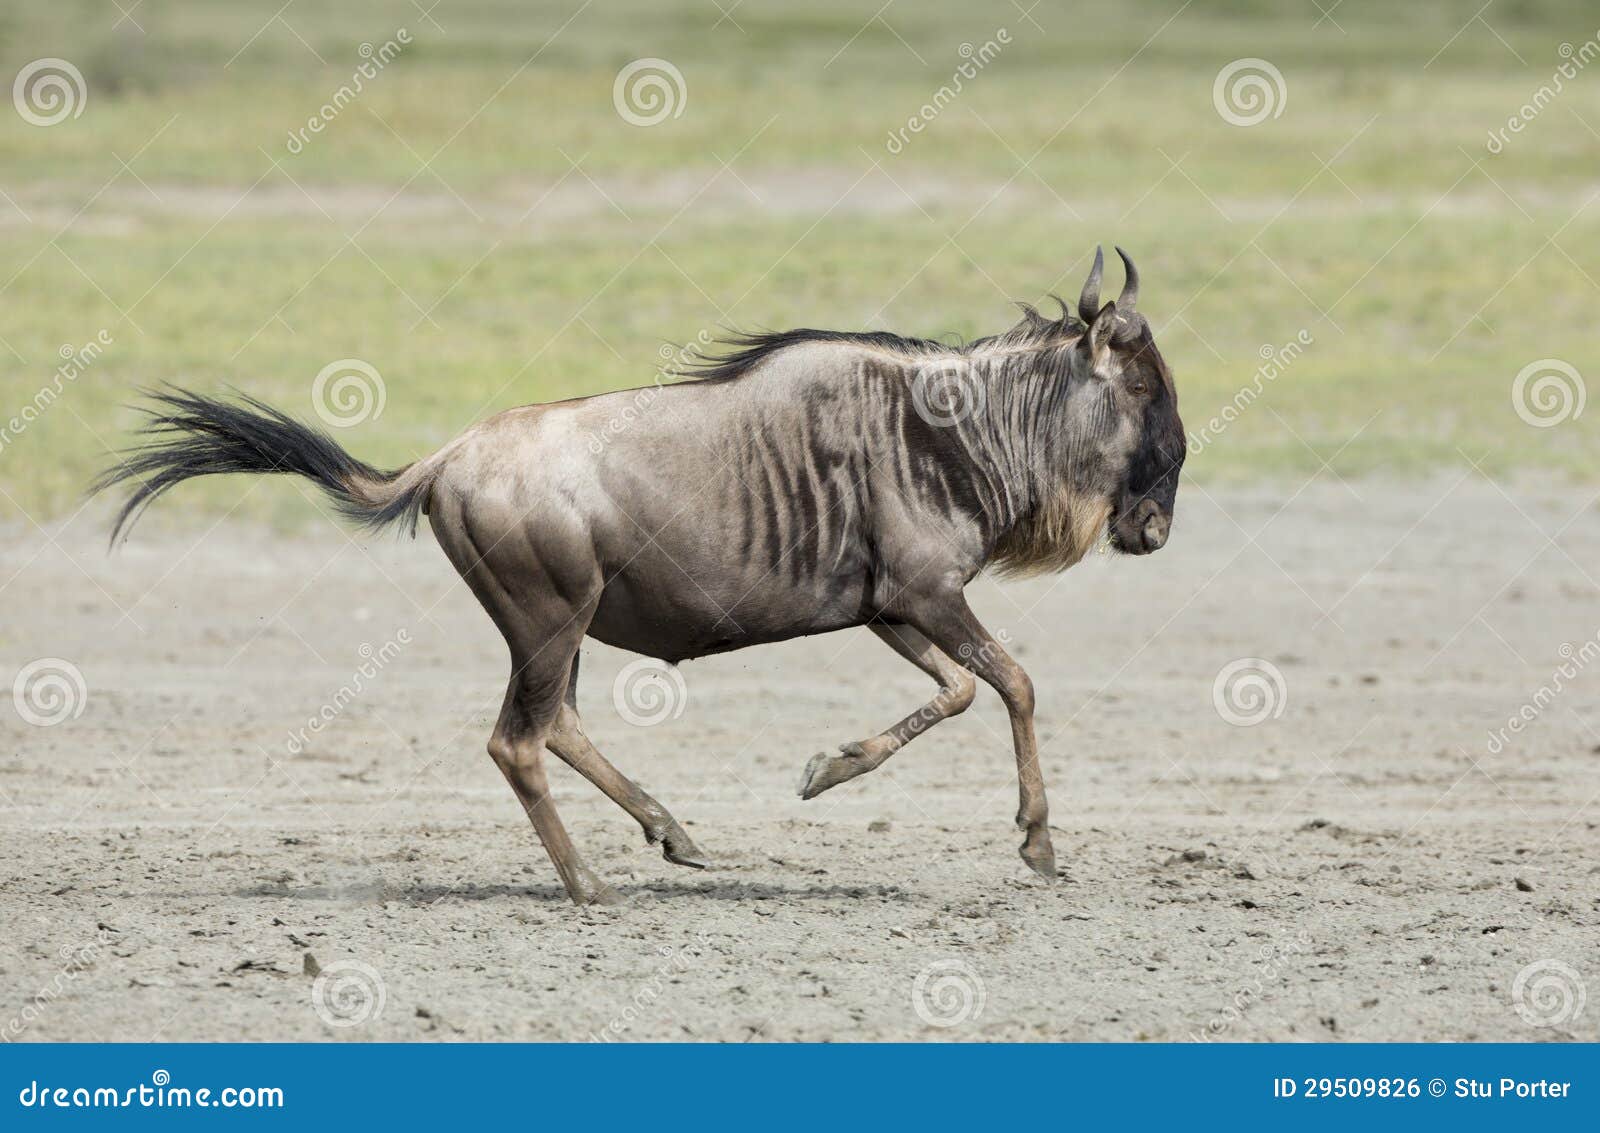 white bearded wildebeest running, tanzania